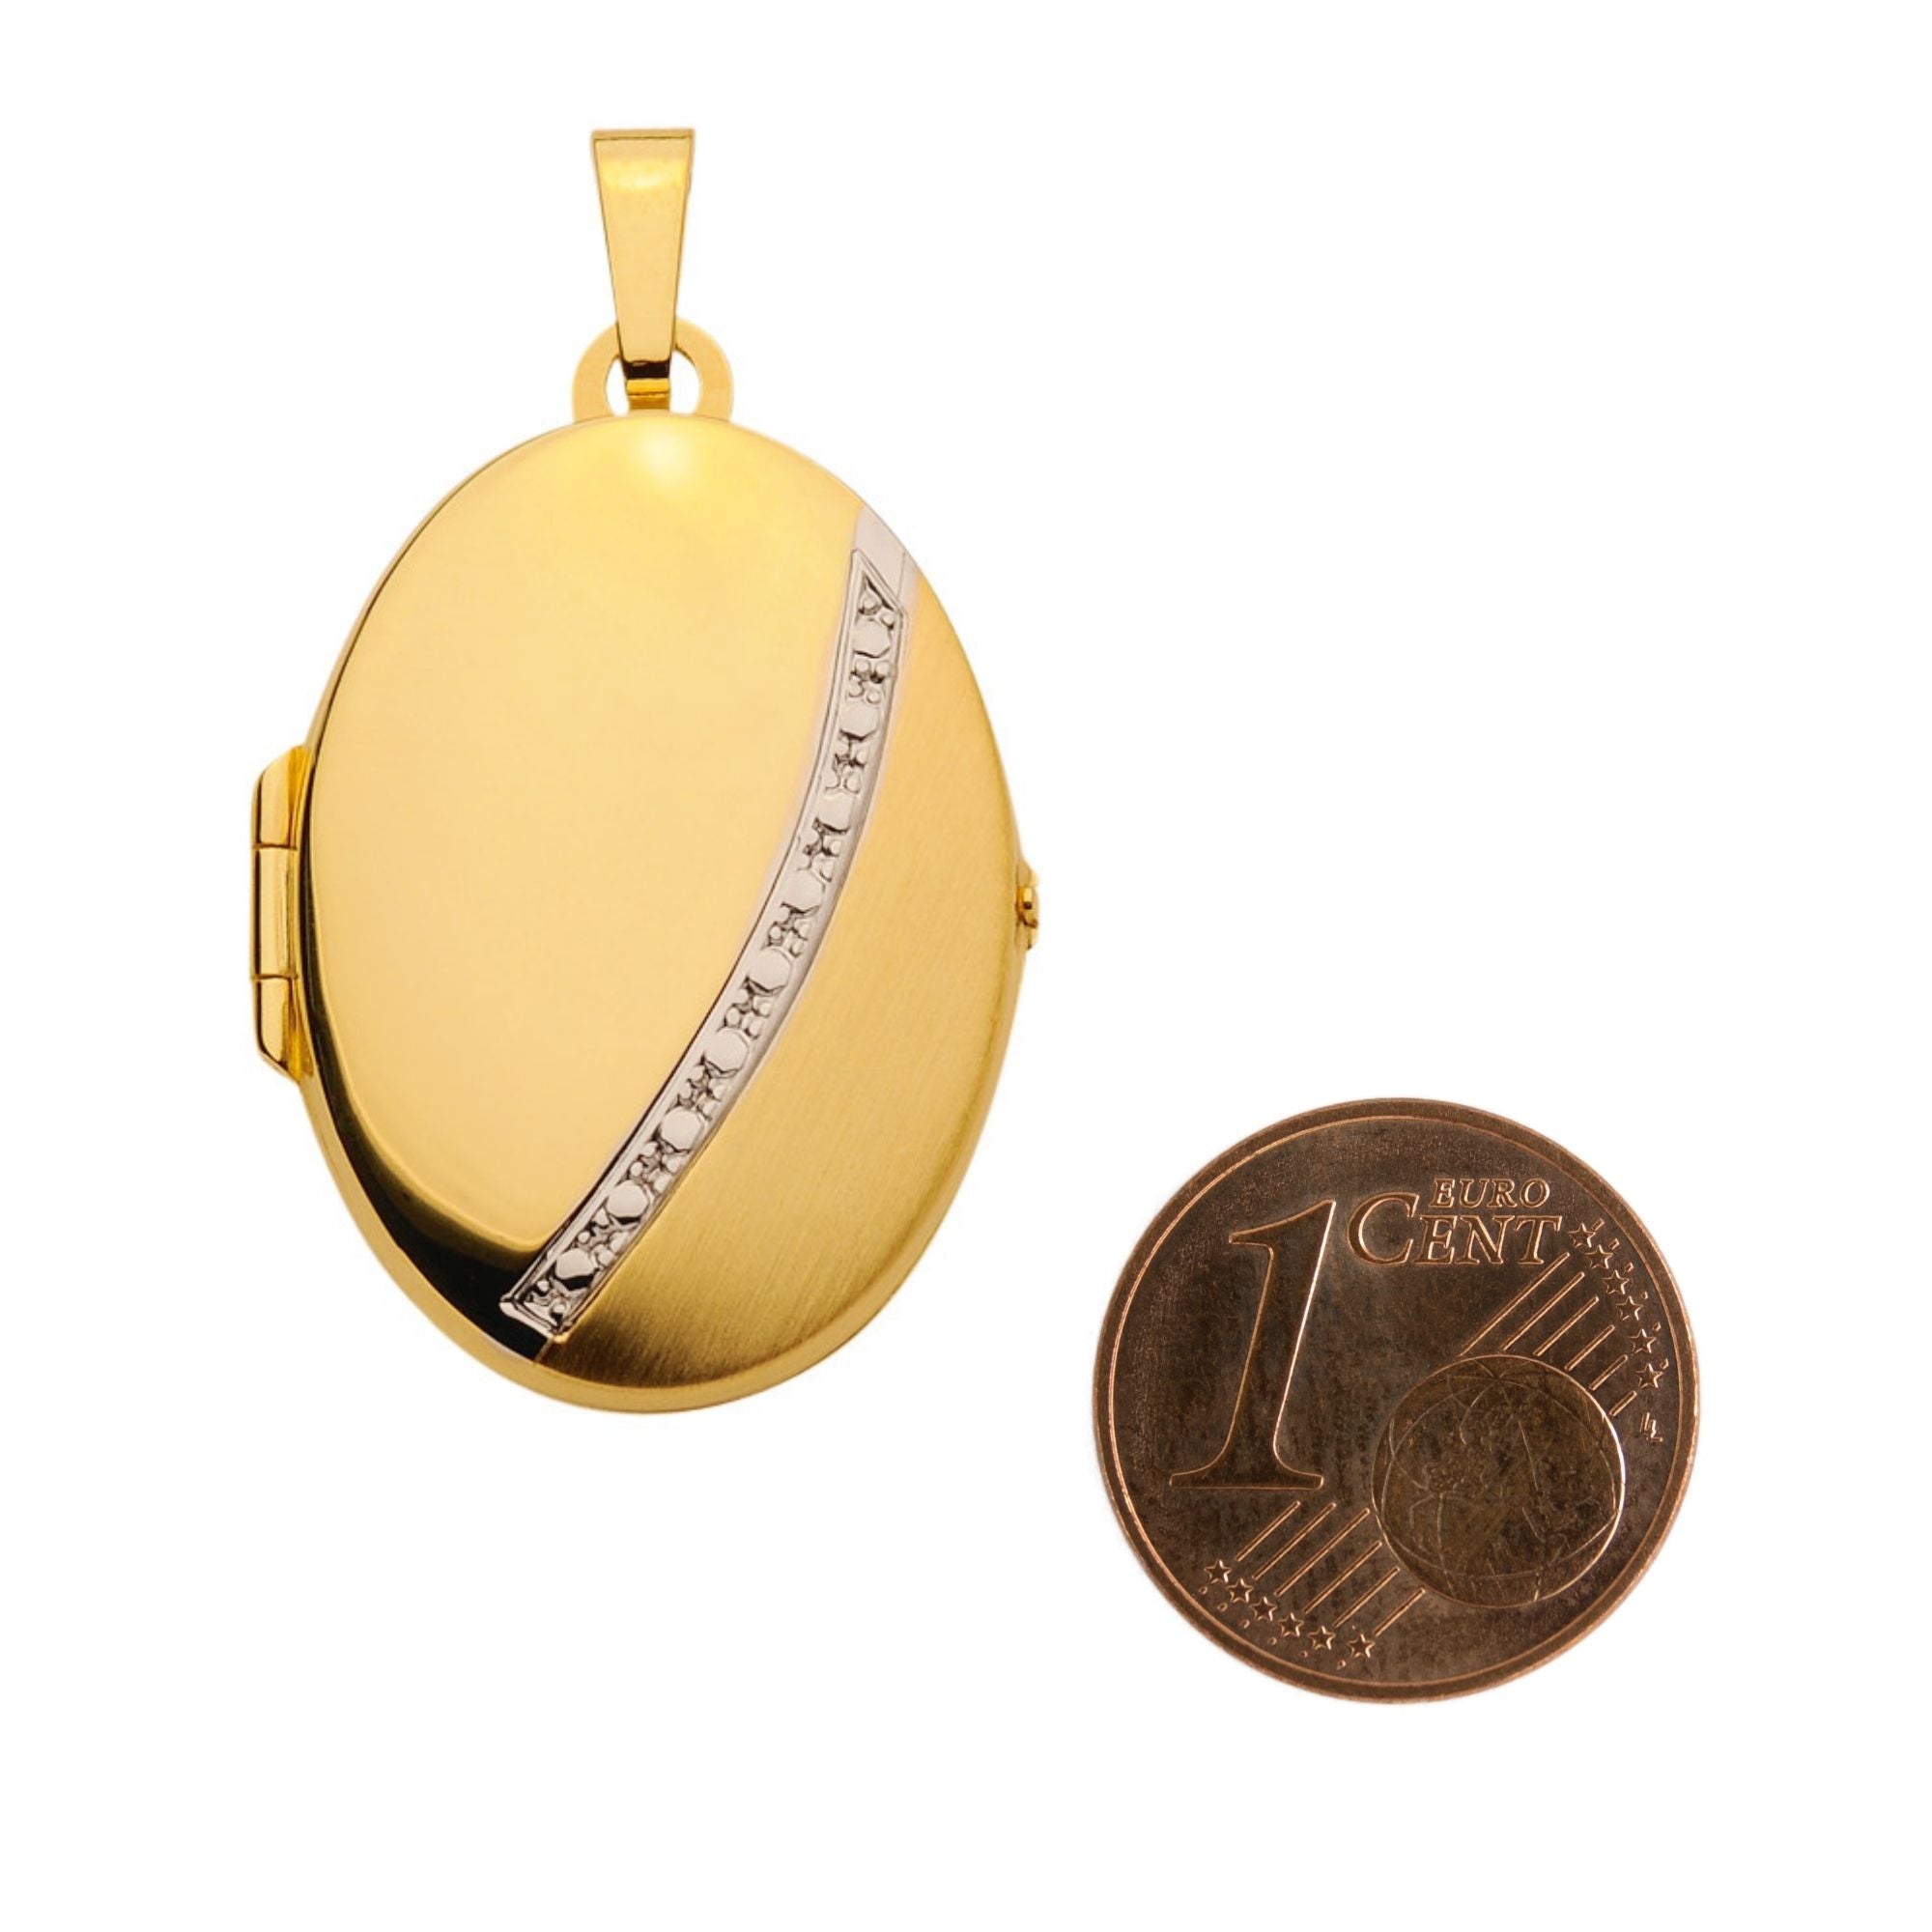 Ovales Medaillon aus Gold matt / poliert